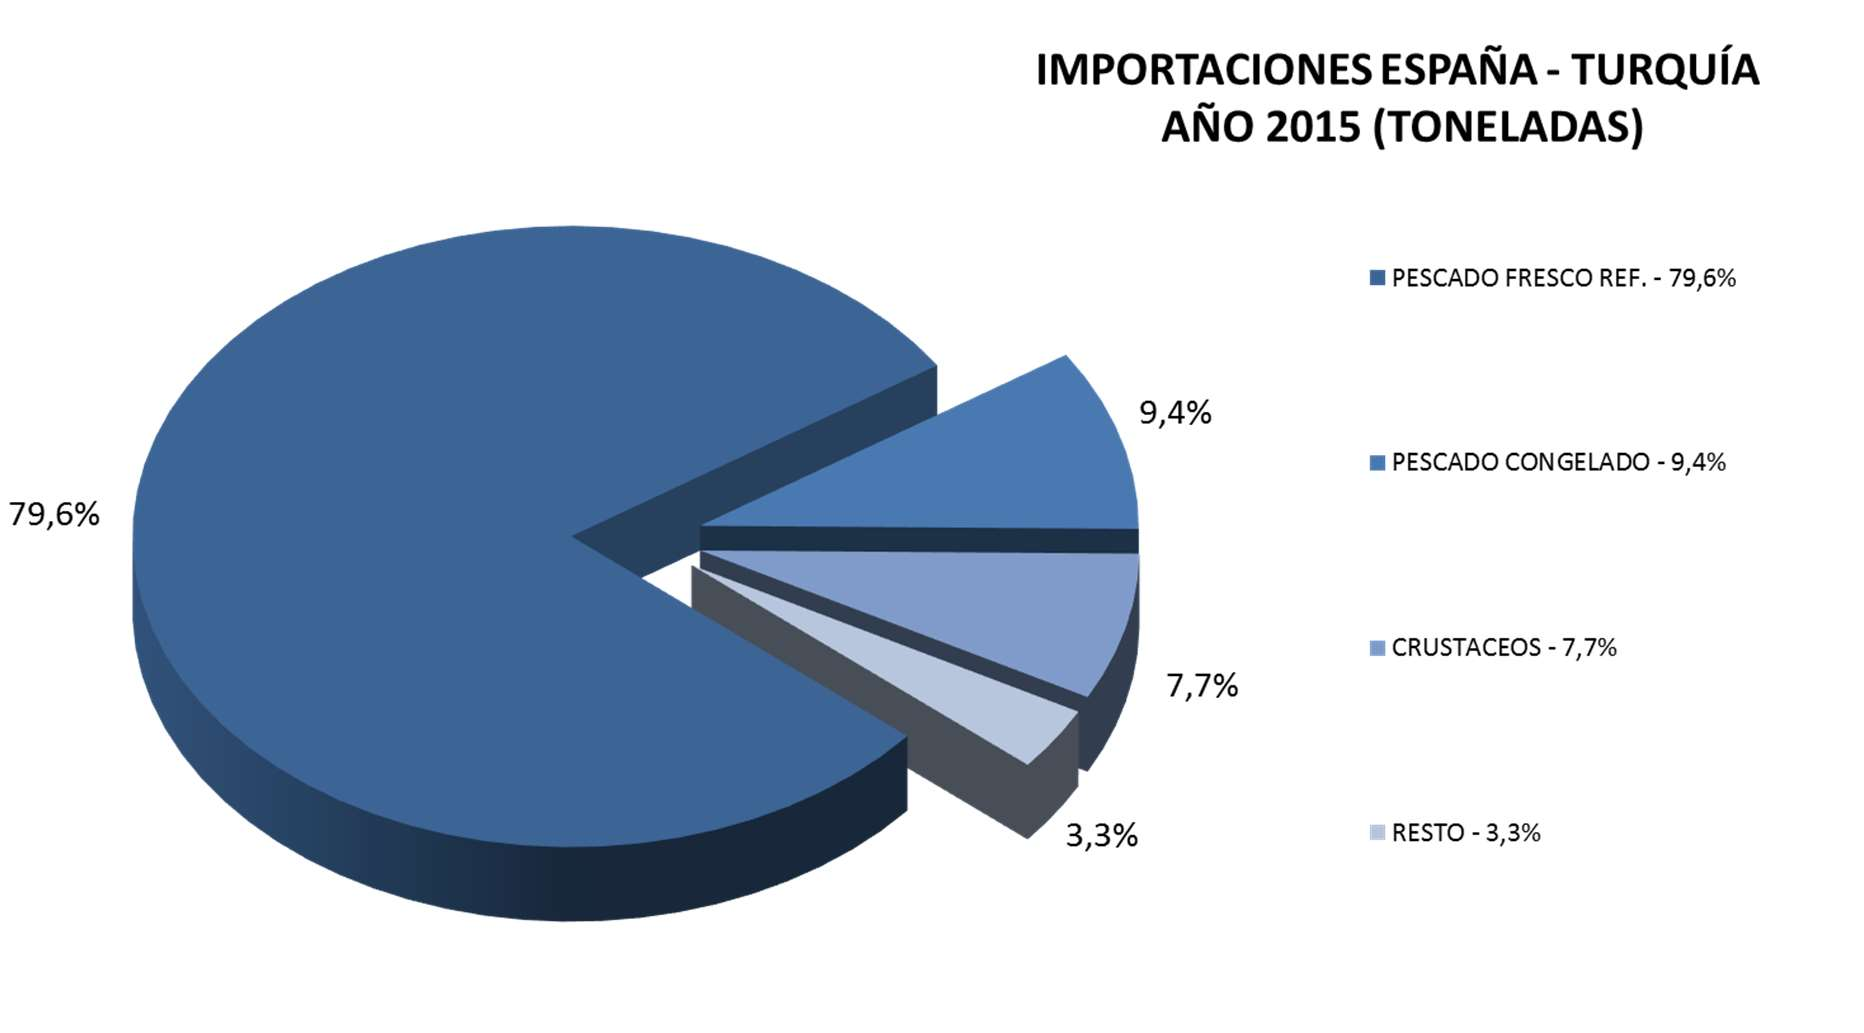 En 2015 el 79,6% de las importaciones corresponden al pescado fresco o refrigerado.